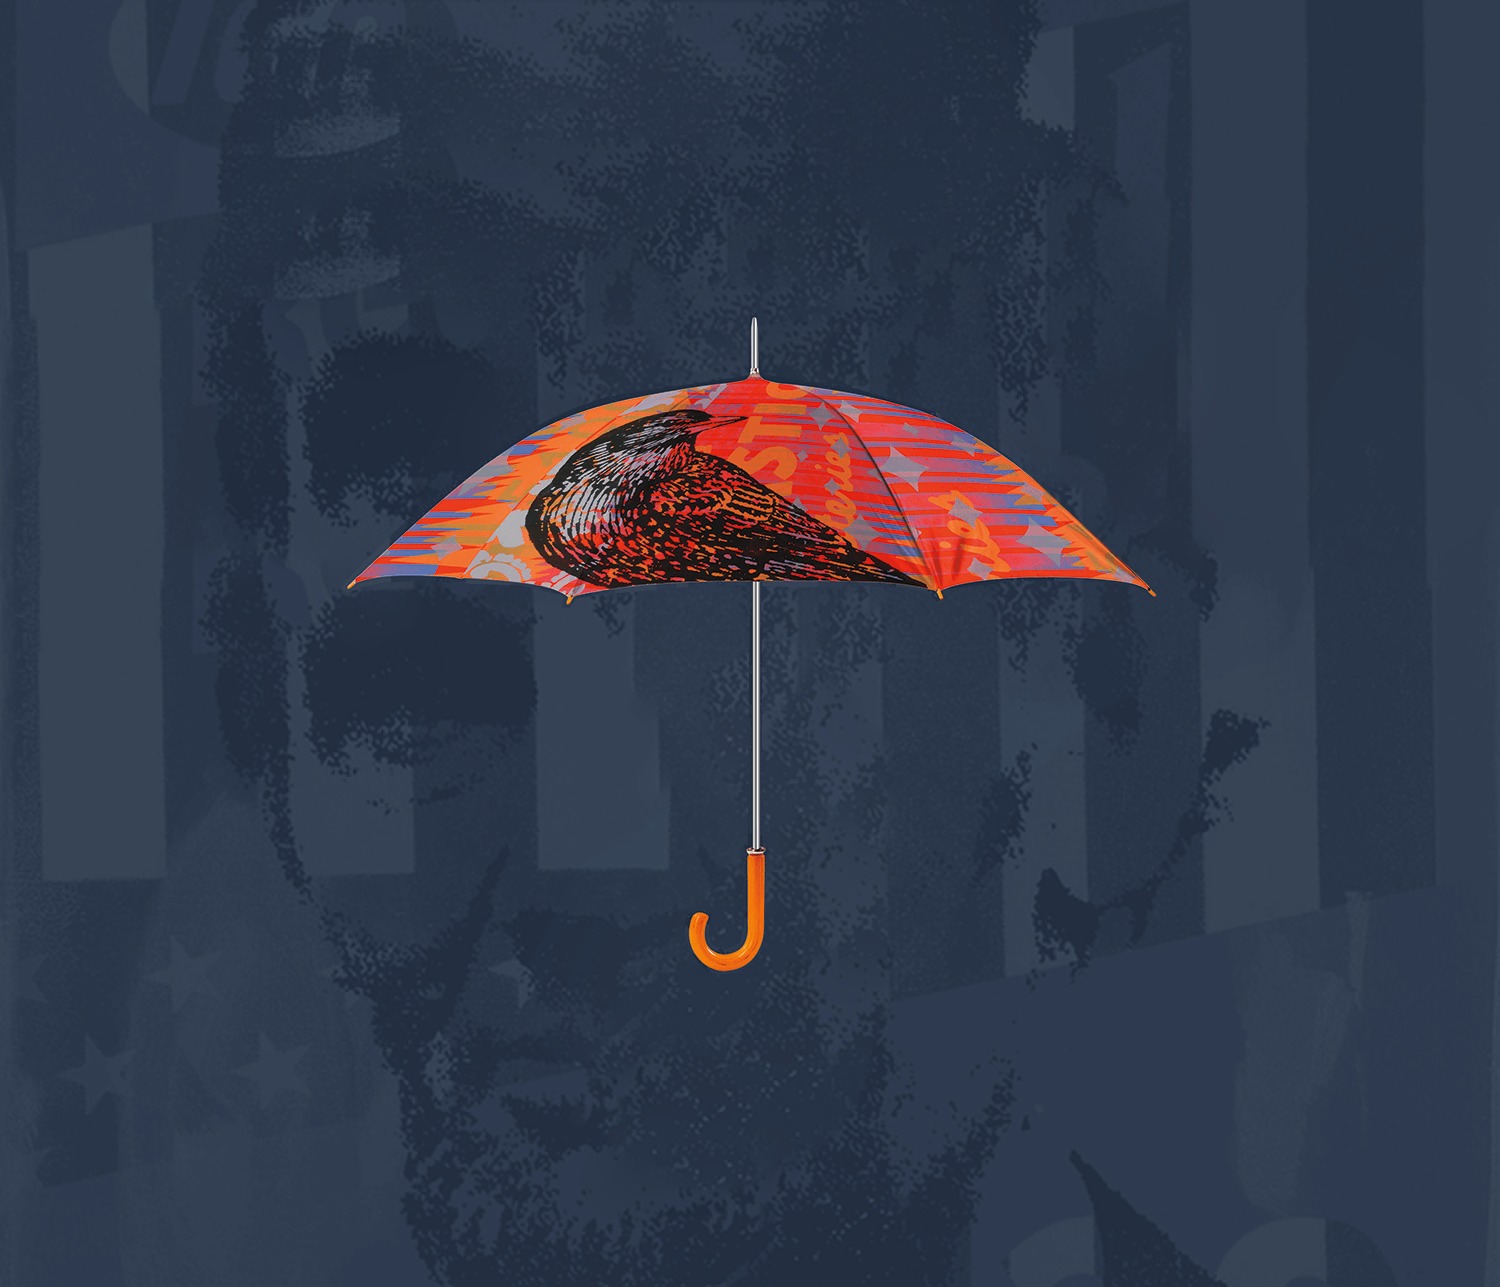 umbrella.png